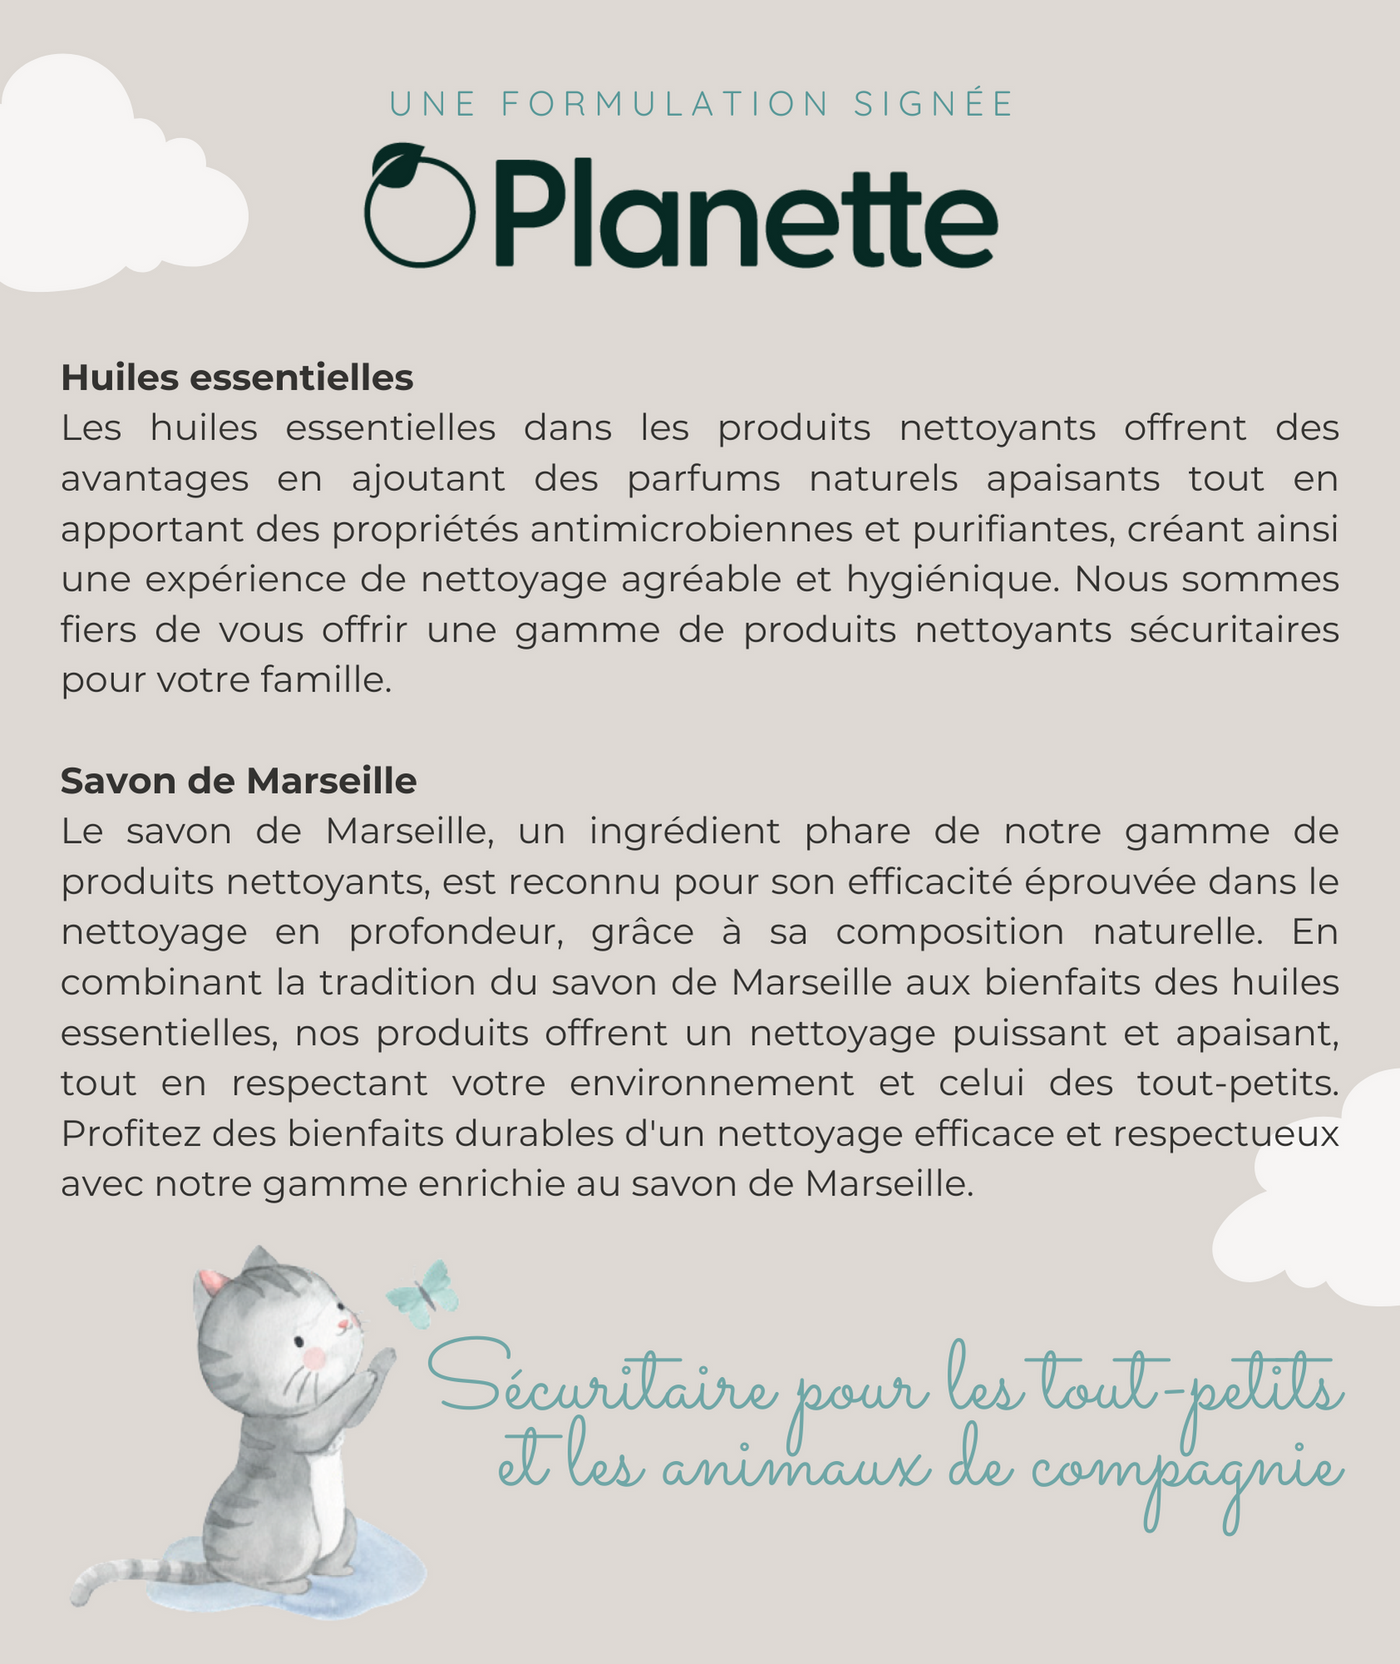 Gamme nettoyante - Assainisseur d'air - 125 ml - Boite de 6 - Veille sur toi & Planette